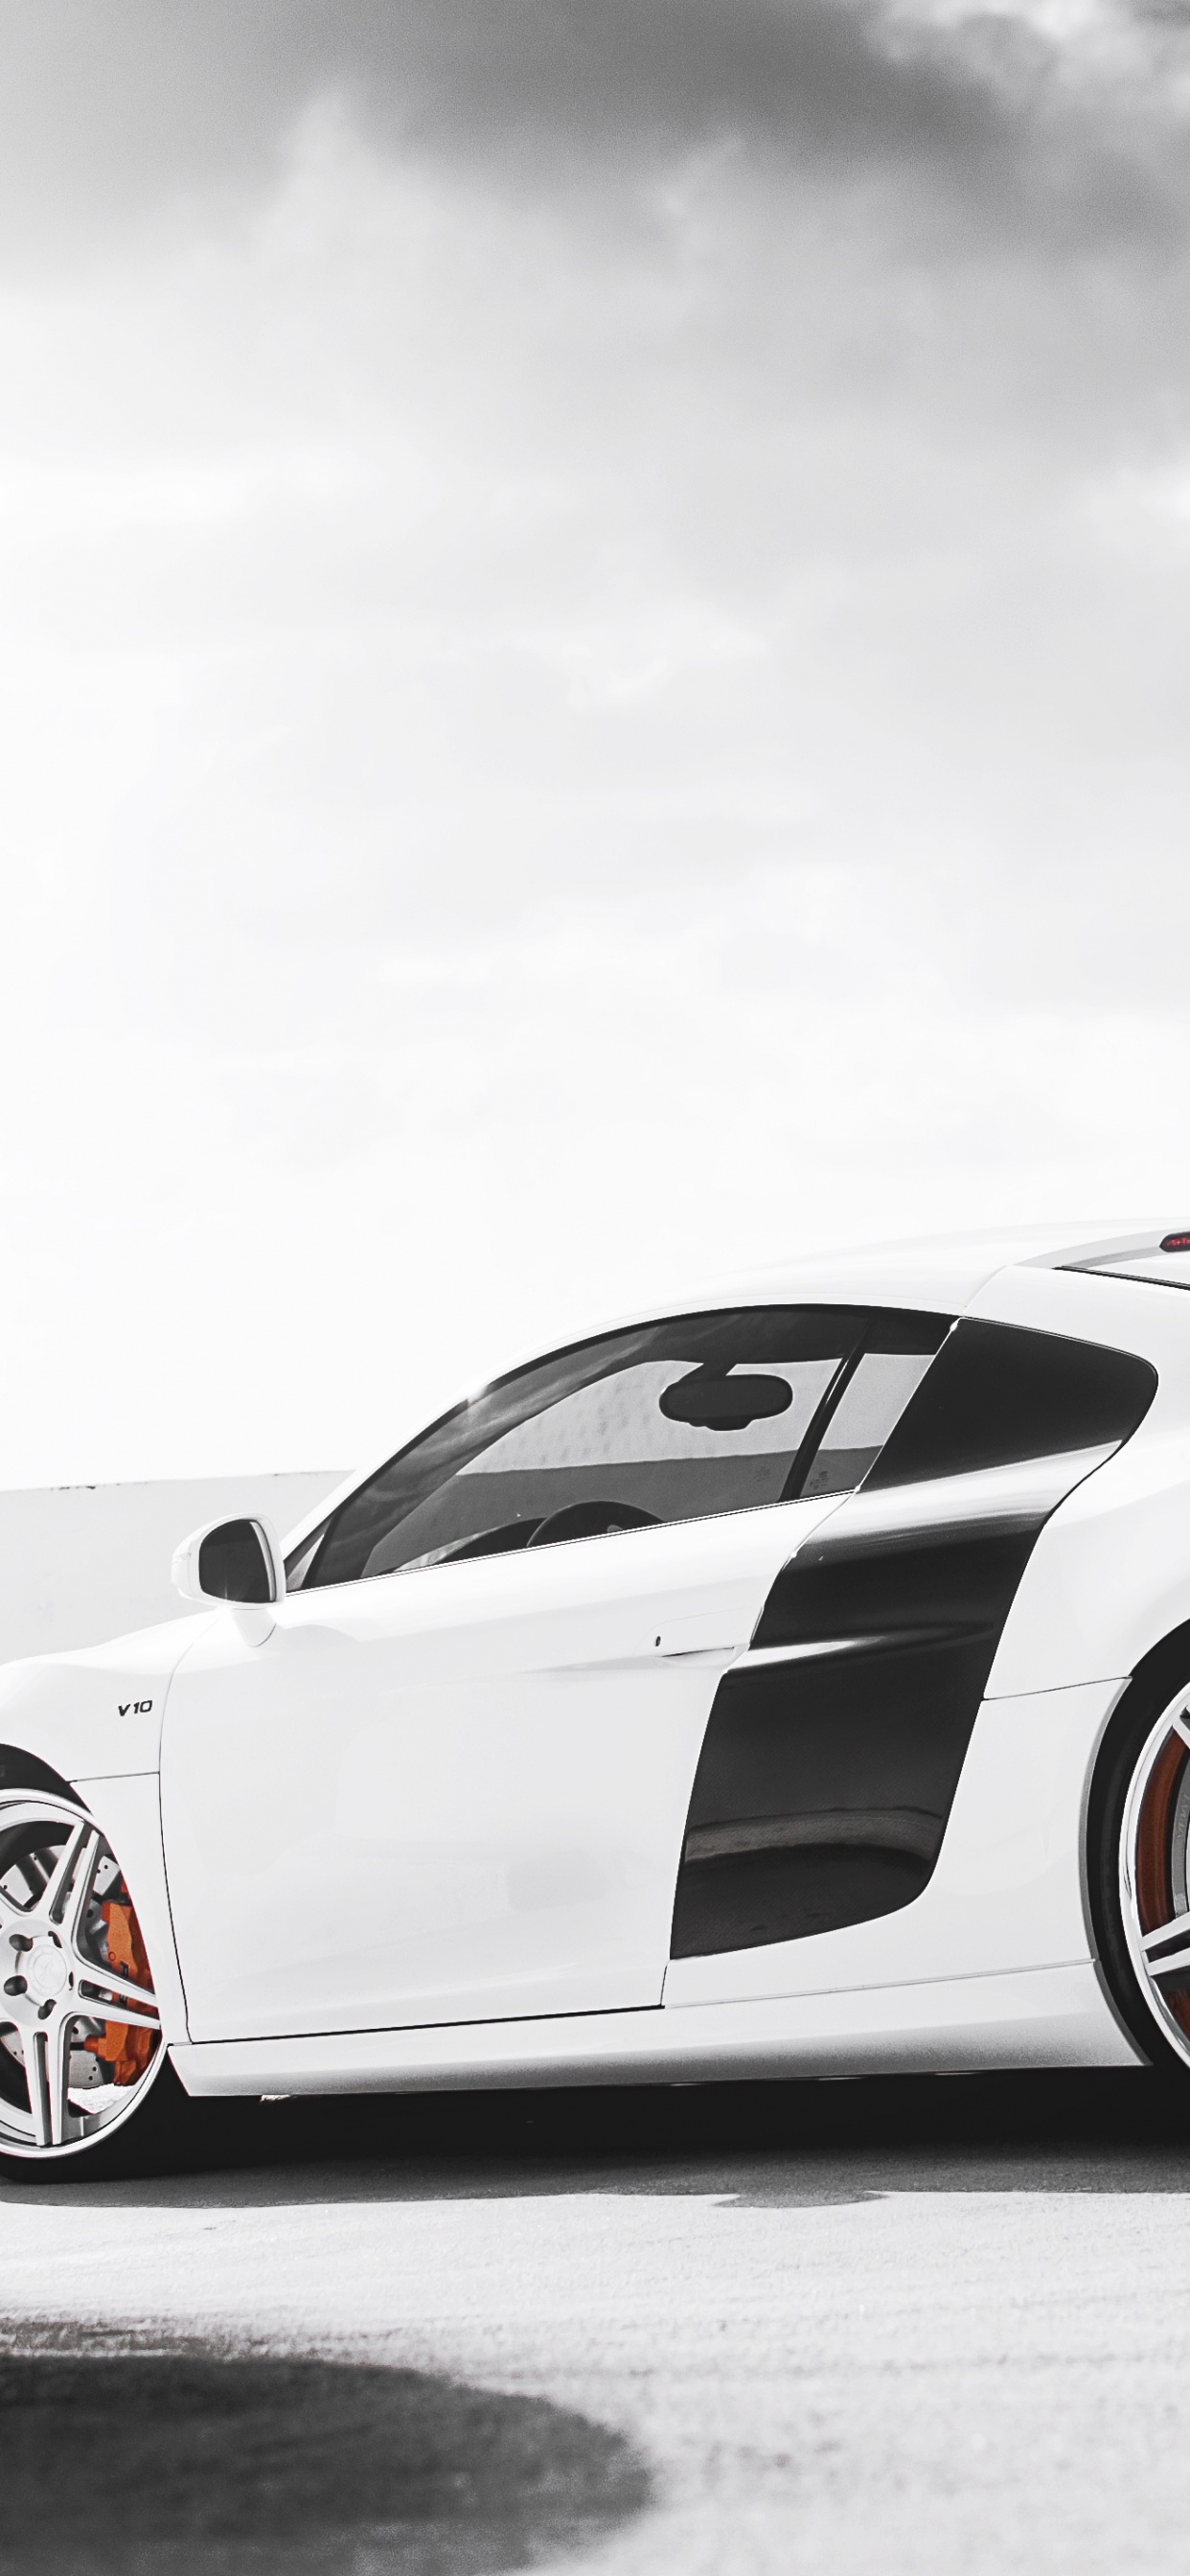 White Porsche 911 on Black Surface. Wallpaper in 1242x2688 Resolution